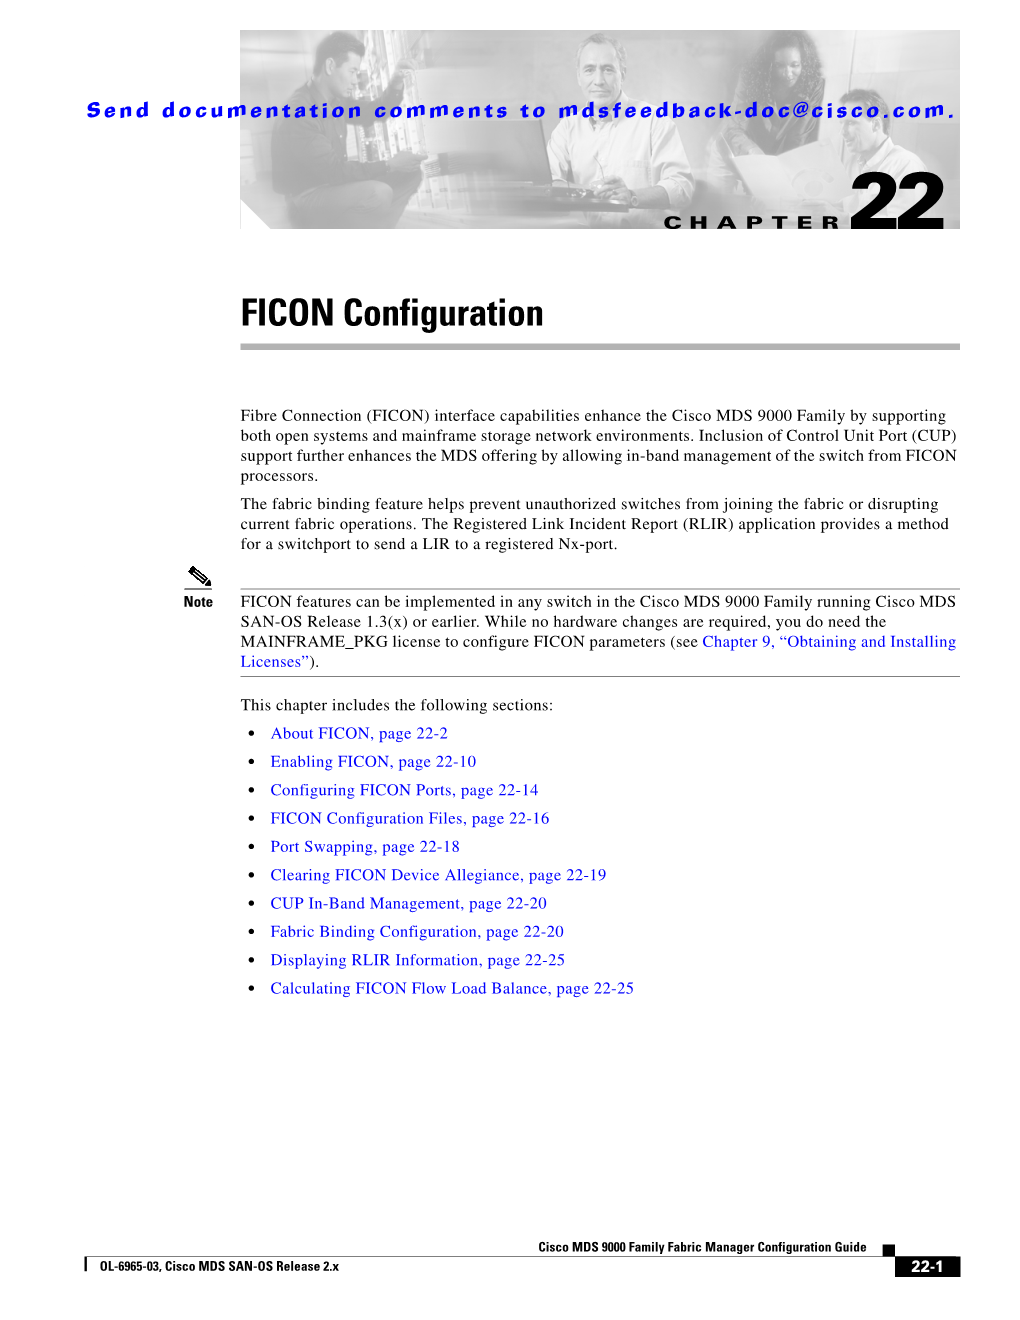 FICON Configuration